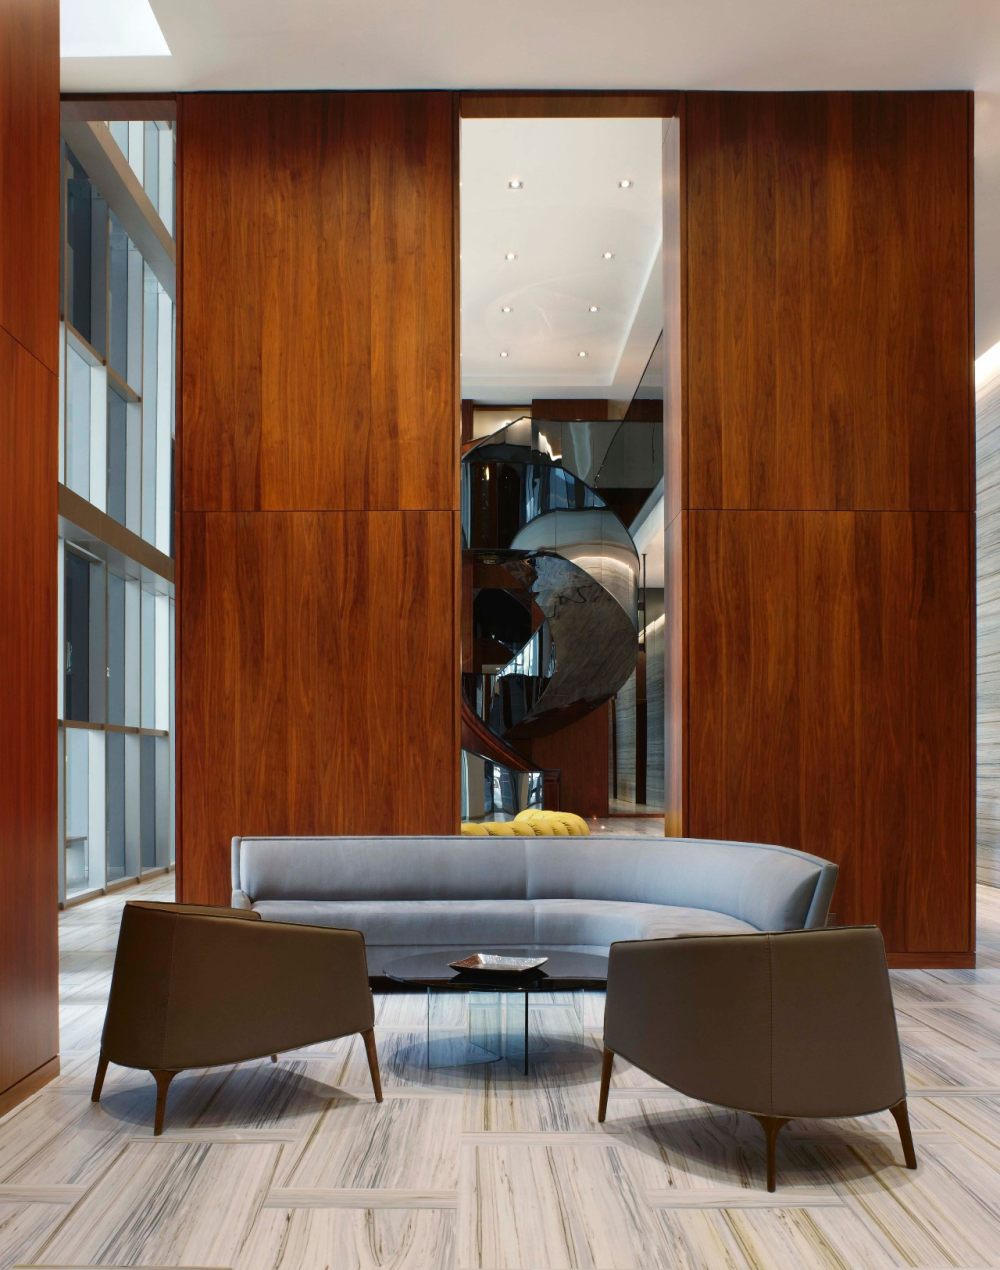 曼哈顿高端家具展厅 弧形沙发当下流行的时尚元素 (1)_曼哈顿高端家具展厅 弧形沙发当下流行的时尚元素 (5).jpg